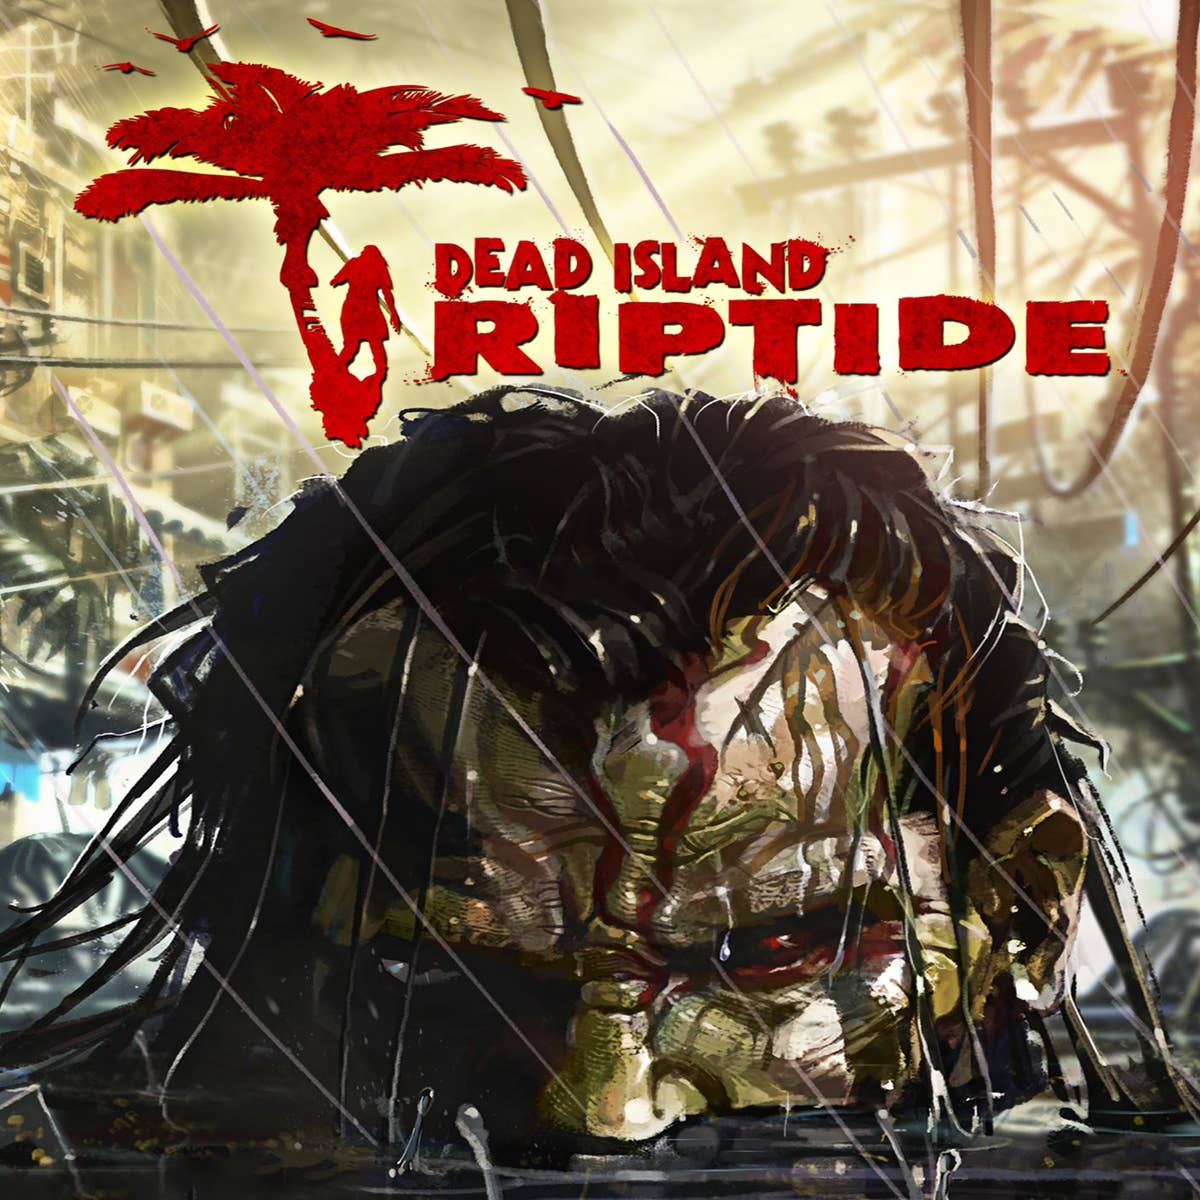 Dead Island Riptide: Rigor Mortis Edition announced for North America